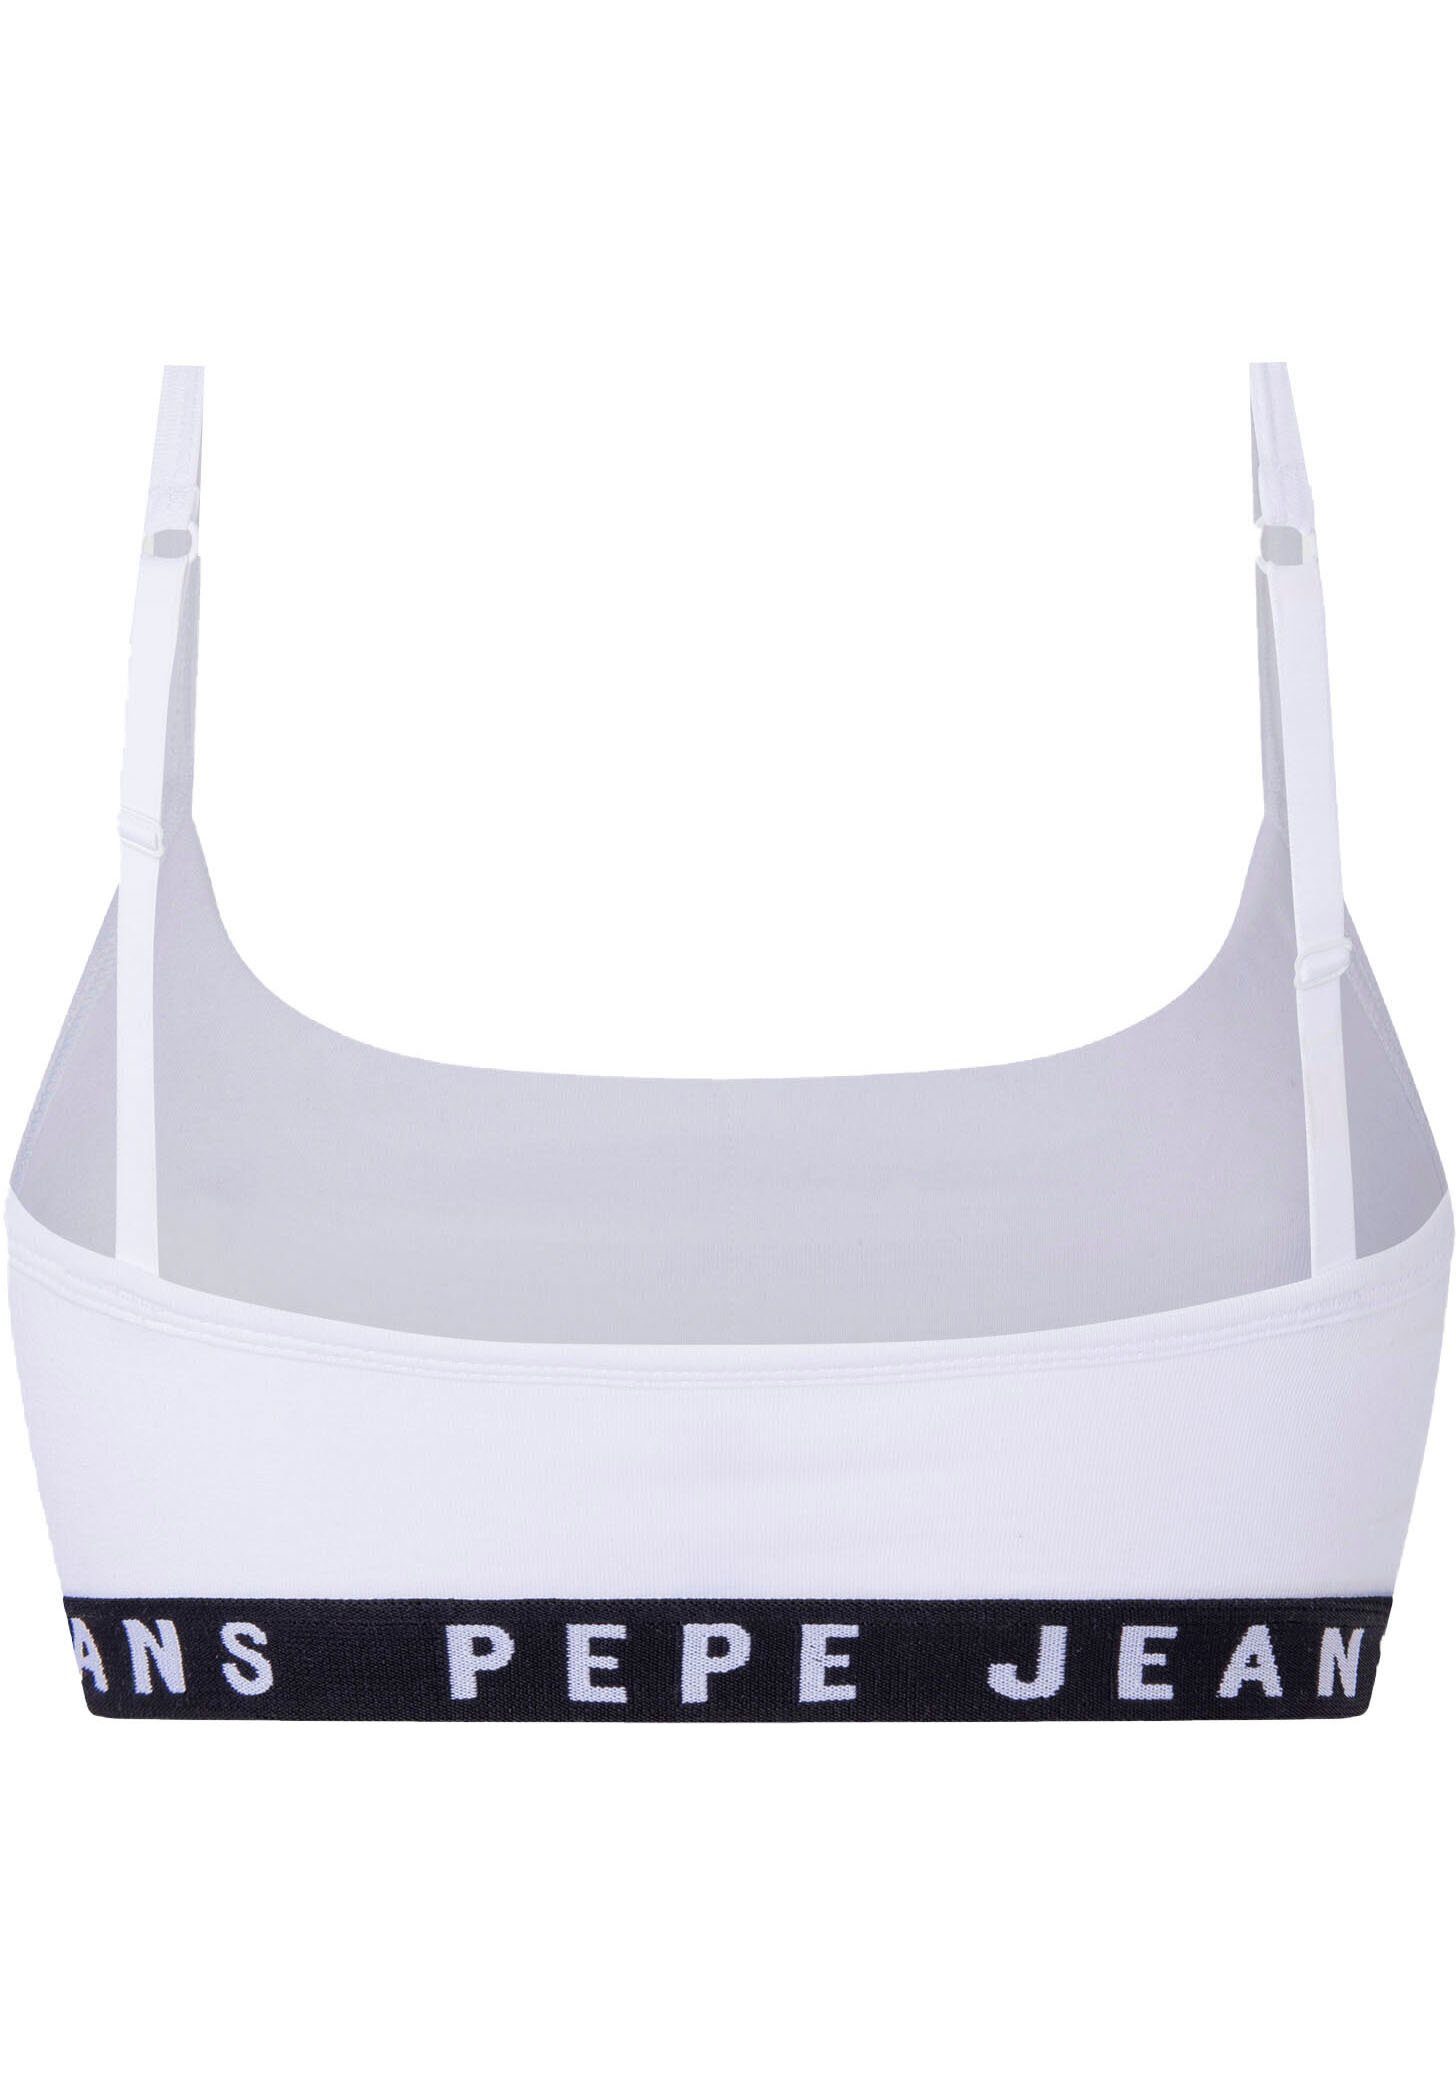 Logo Bustier Pepe Jeans